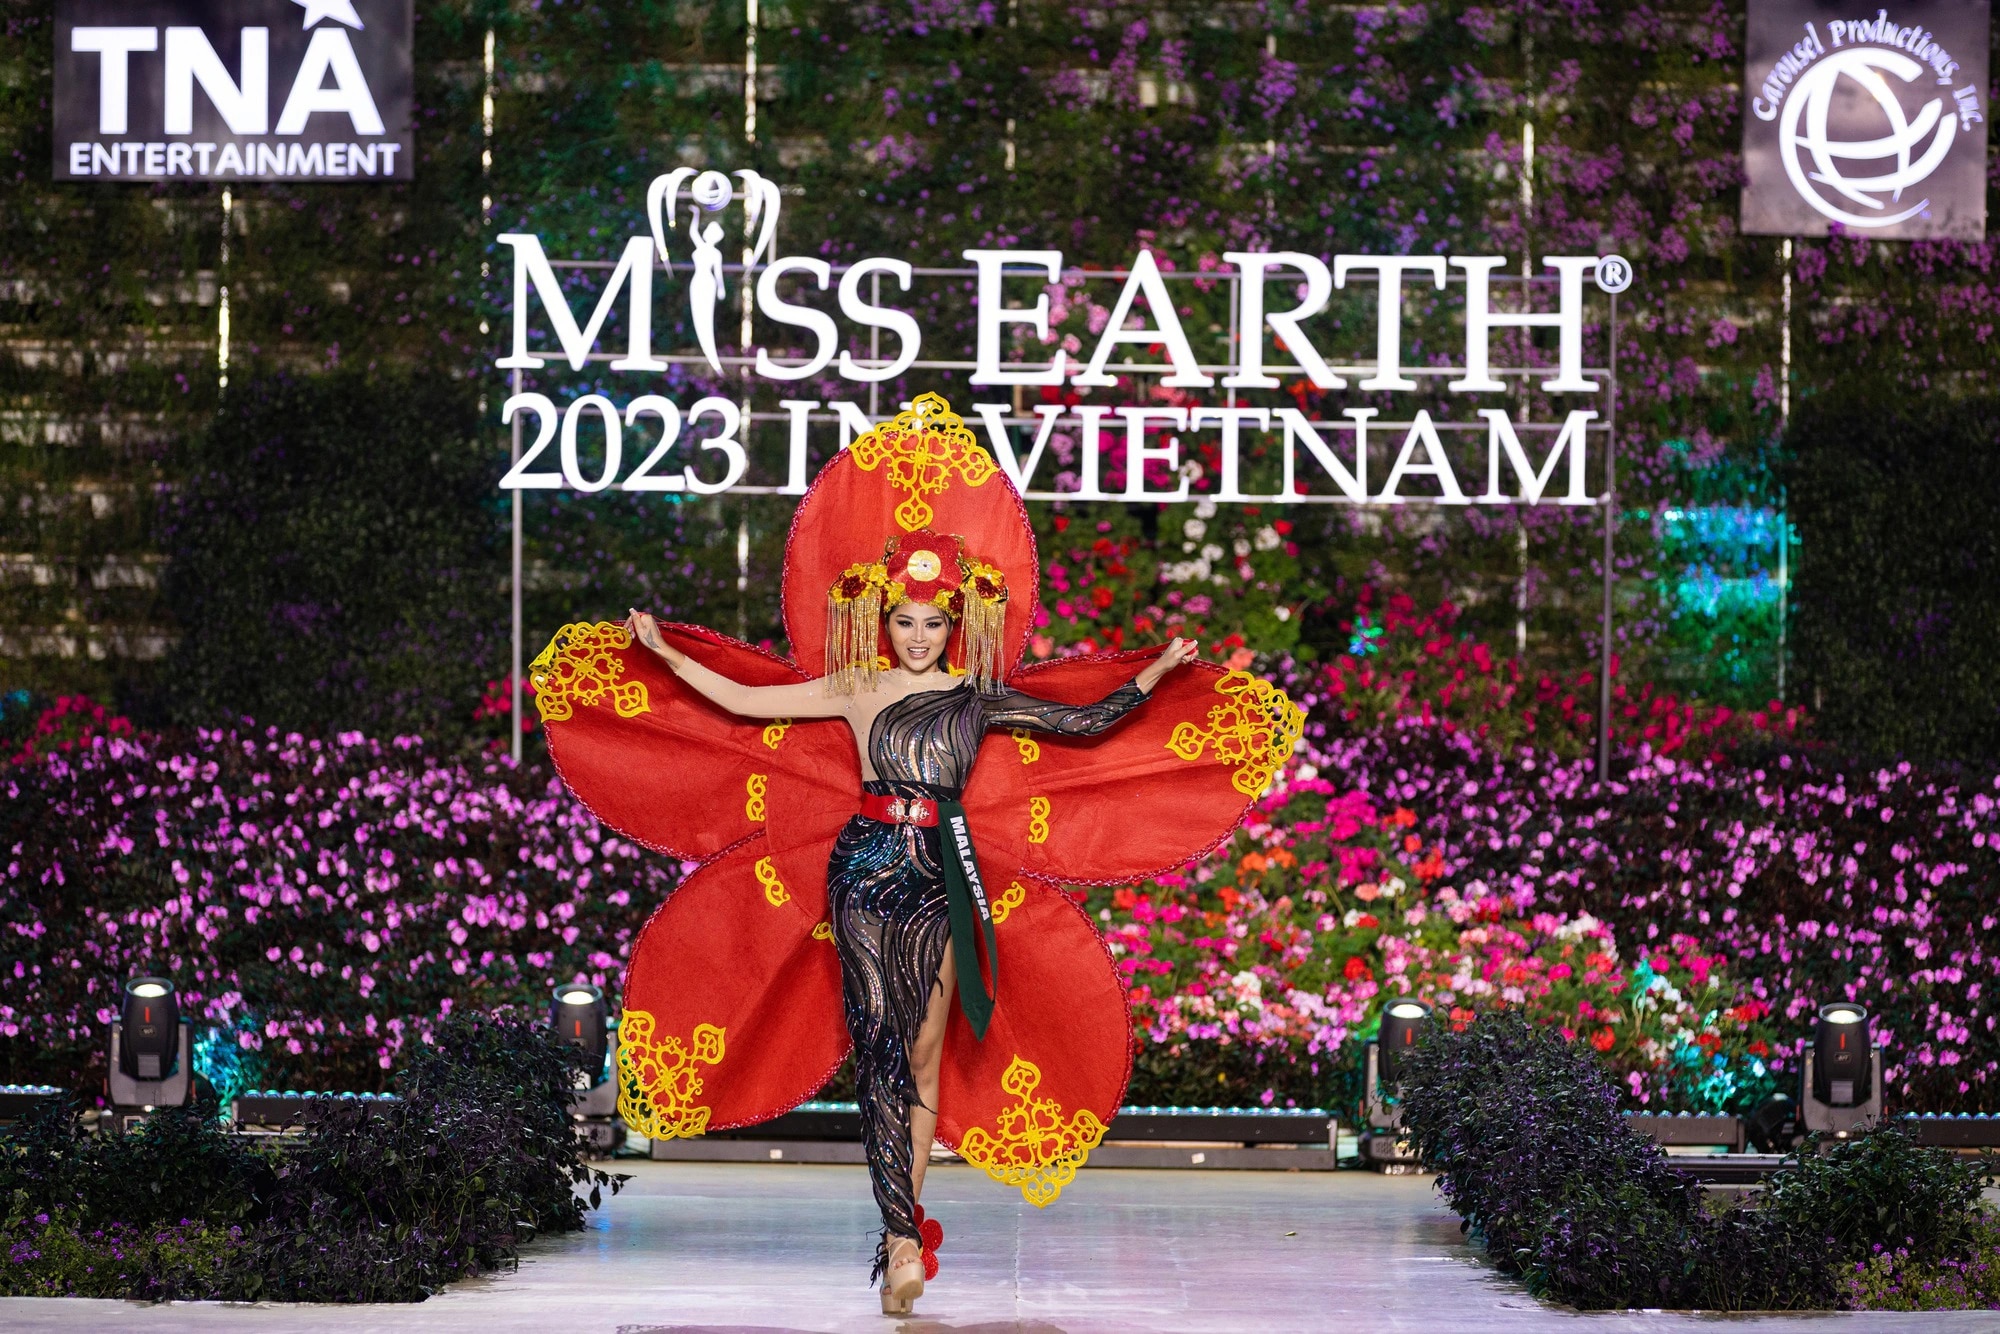 Bán kết Miss Earth 2023 màn trình Trang phục Dân tộc bùng nổ hình ảnh cỏ hoa, muông thú - Ảnh 19.